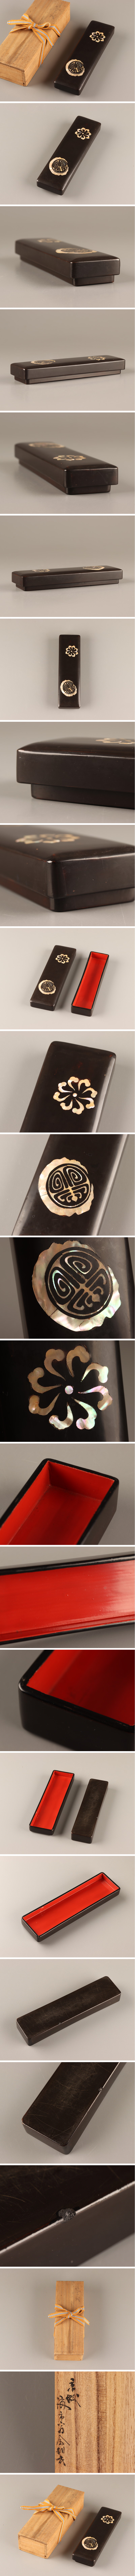 古美術朝鮮美術漆器書道具文房具木製漆塗螺鈿細工箱時代物極上品初だし 